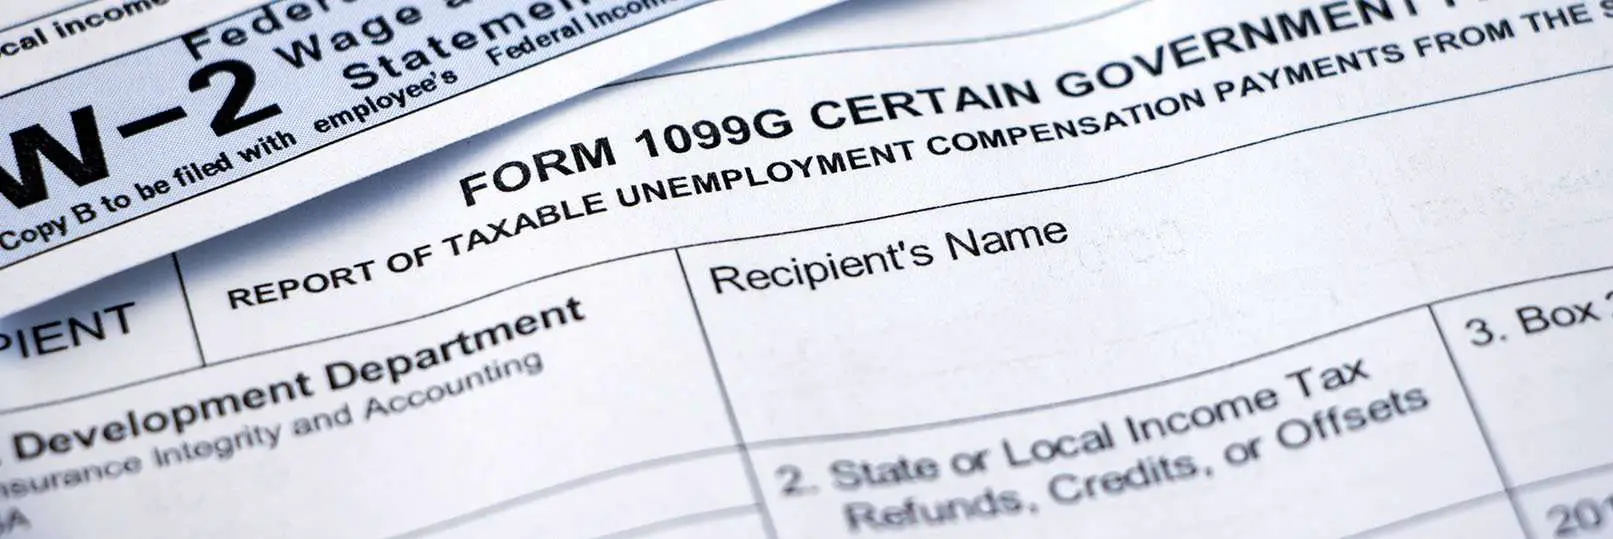 Check Nj Unemployment Claim